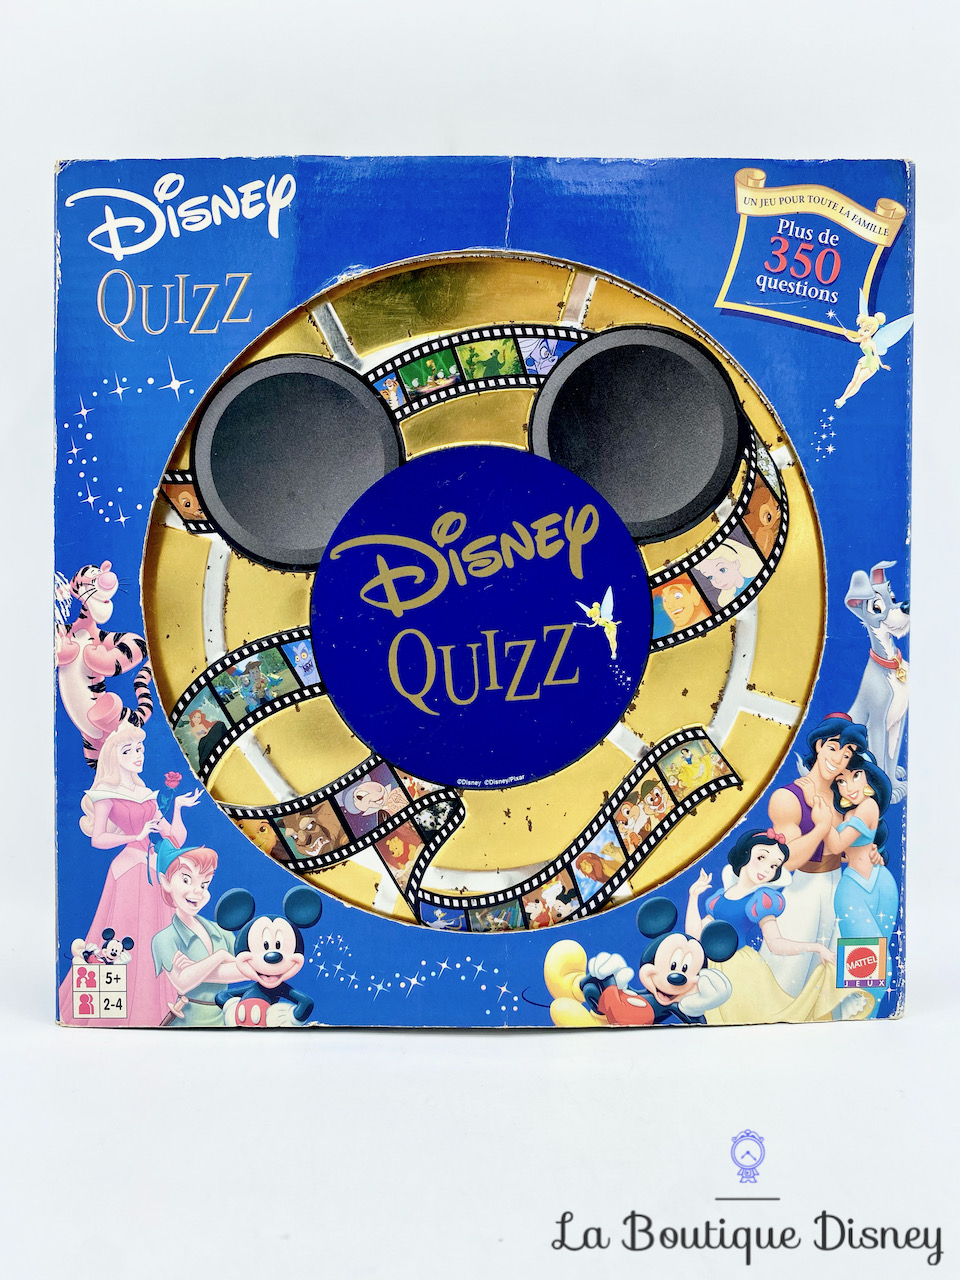 Le Grand Quiz: Disney - Jeux de société - Hachette Heroes